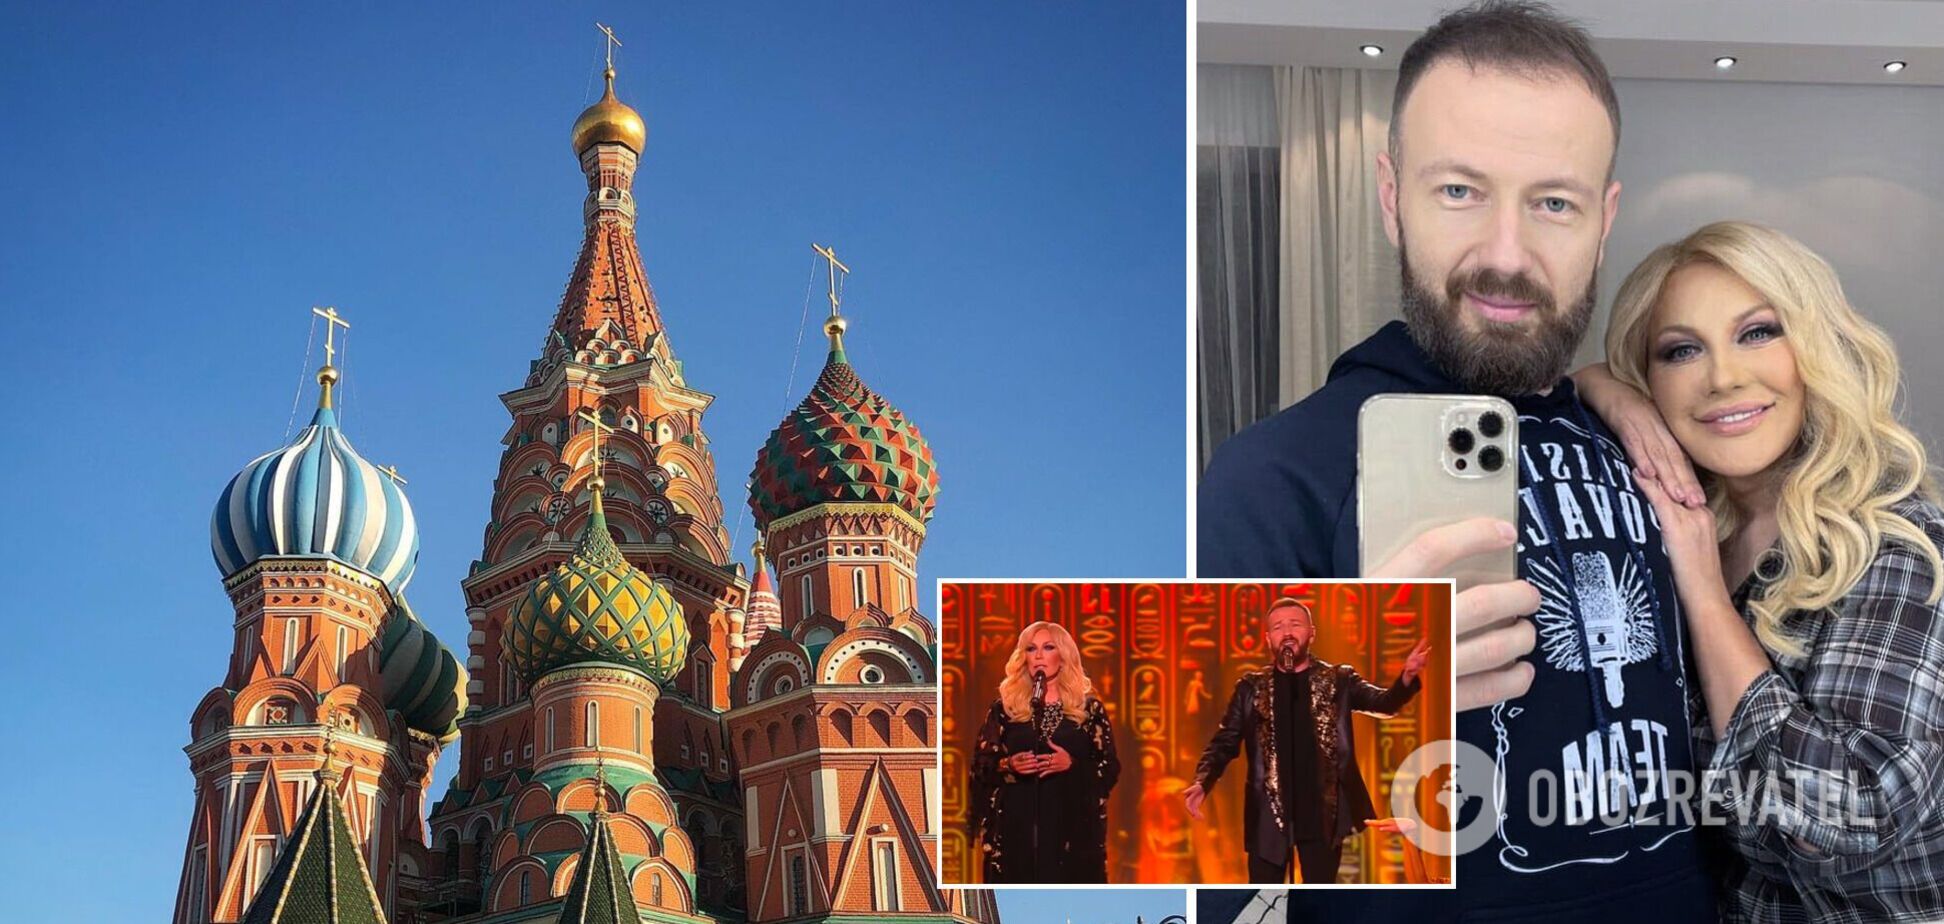 Повалий с сыном выступили на росТВ и похвастались фото из Москвы. Видео